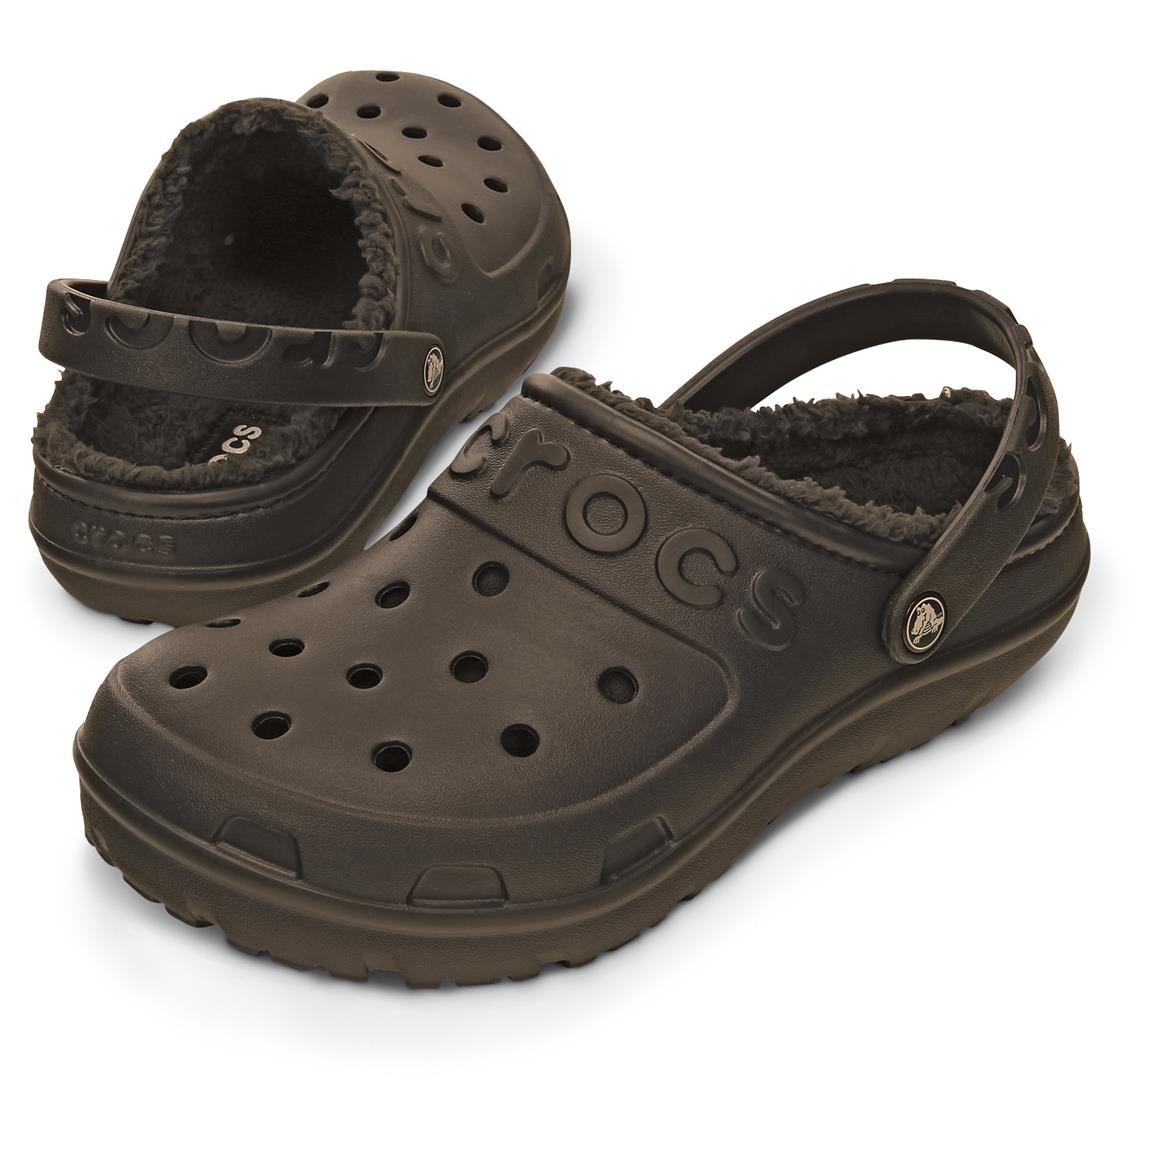  Crocs  Men s  Hilo Lined Clogs 643770 Casual Shoes at 